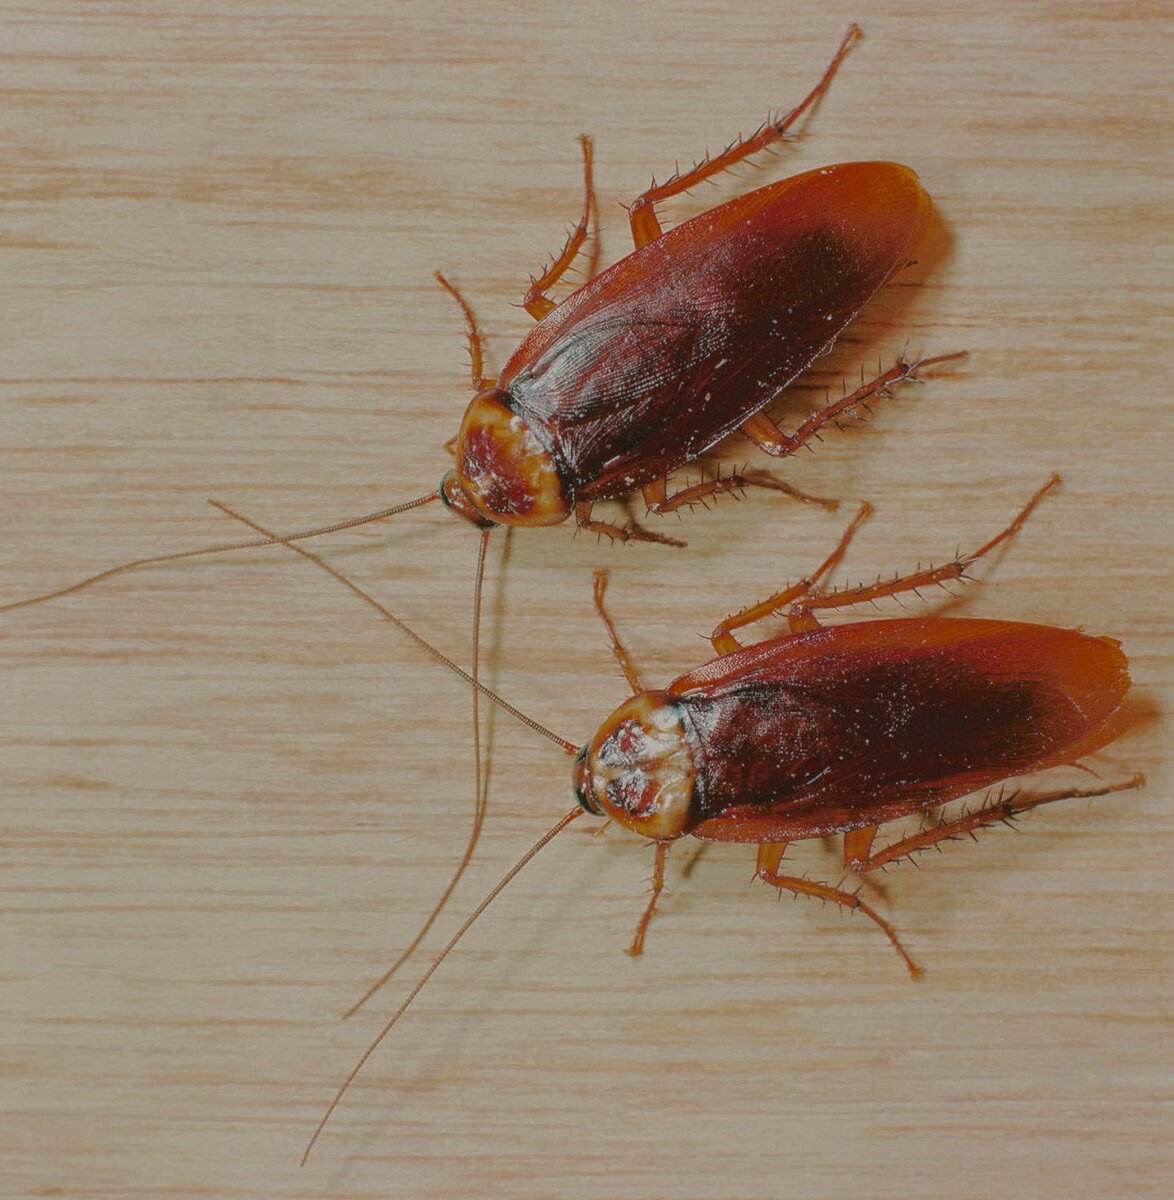 Почему тараканы черные и рыжие